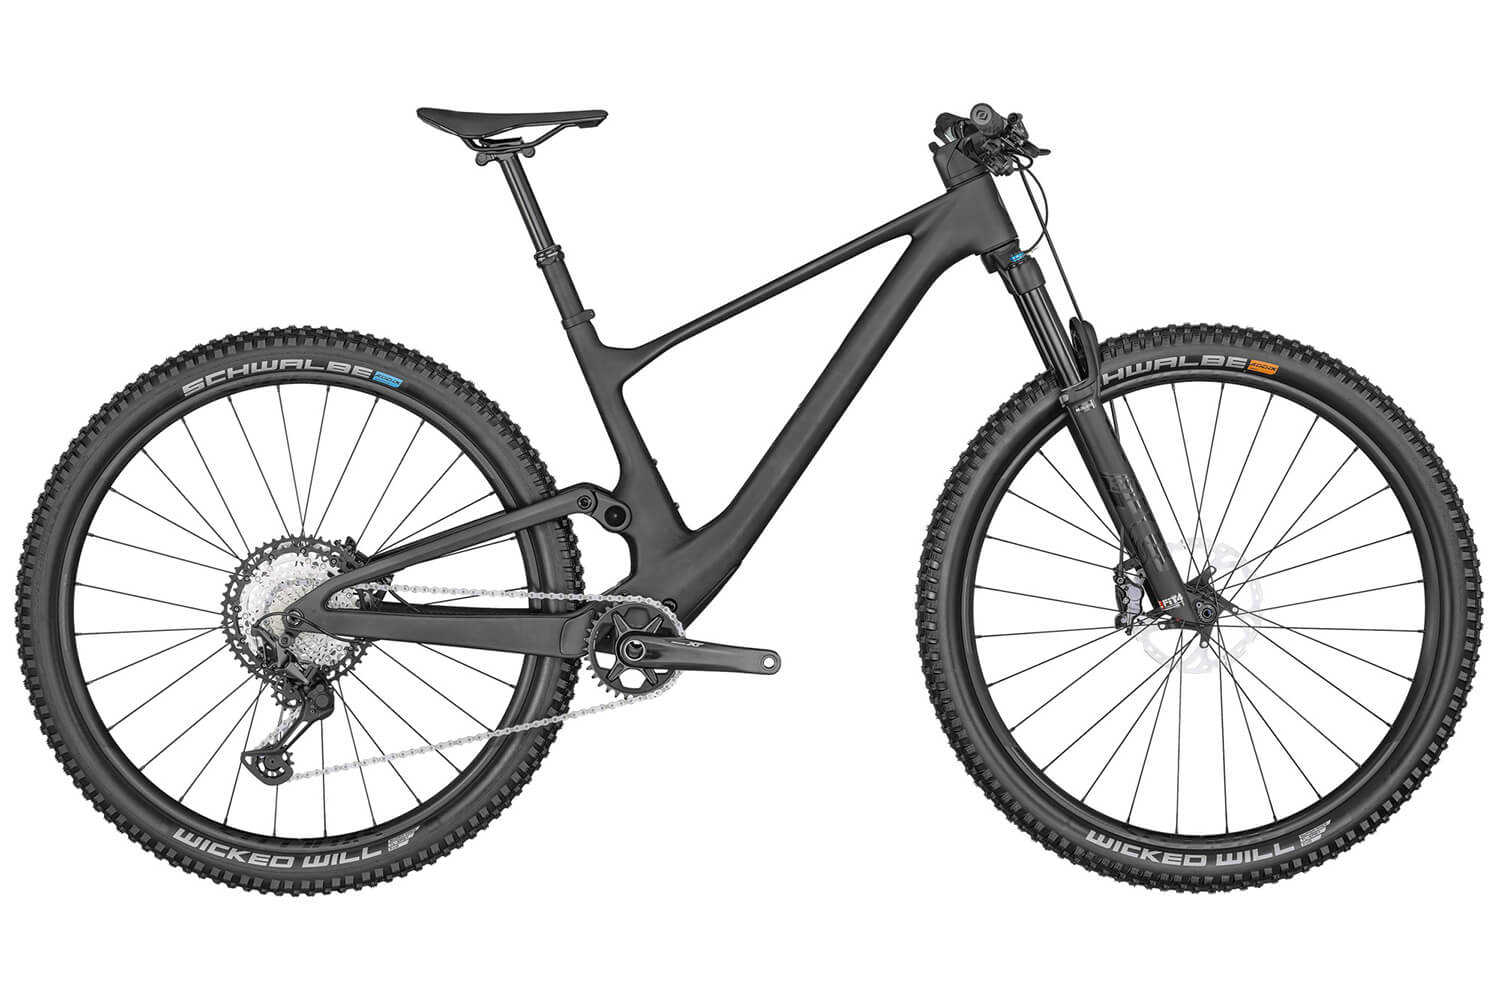  Отзывы о Двухподвесном велосипеде Scott Spark 910 2022